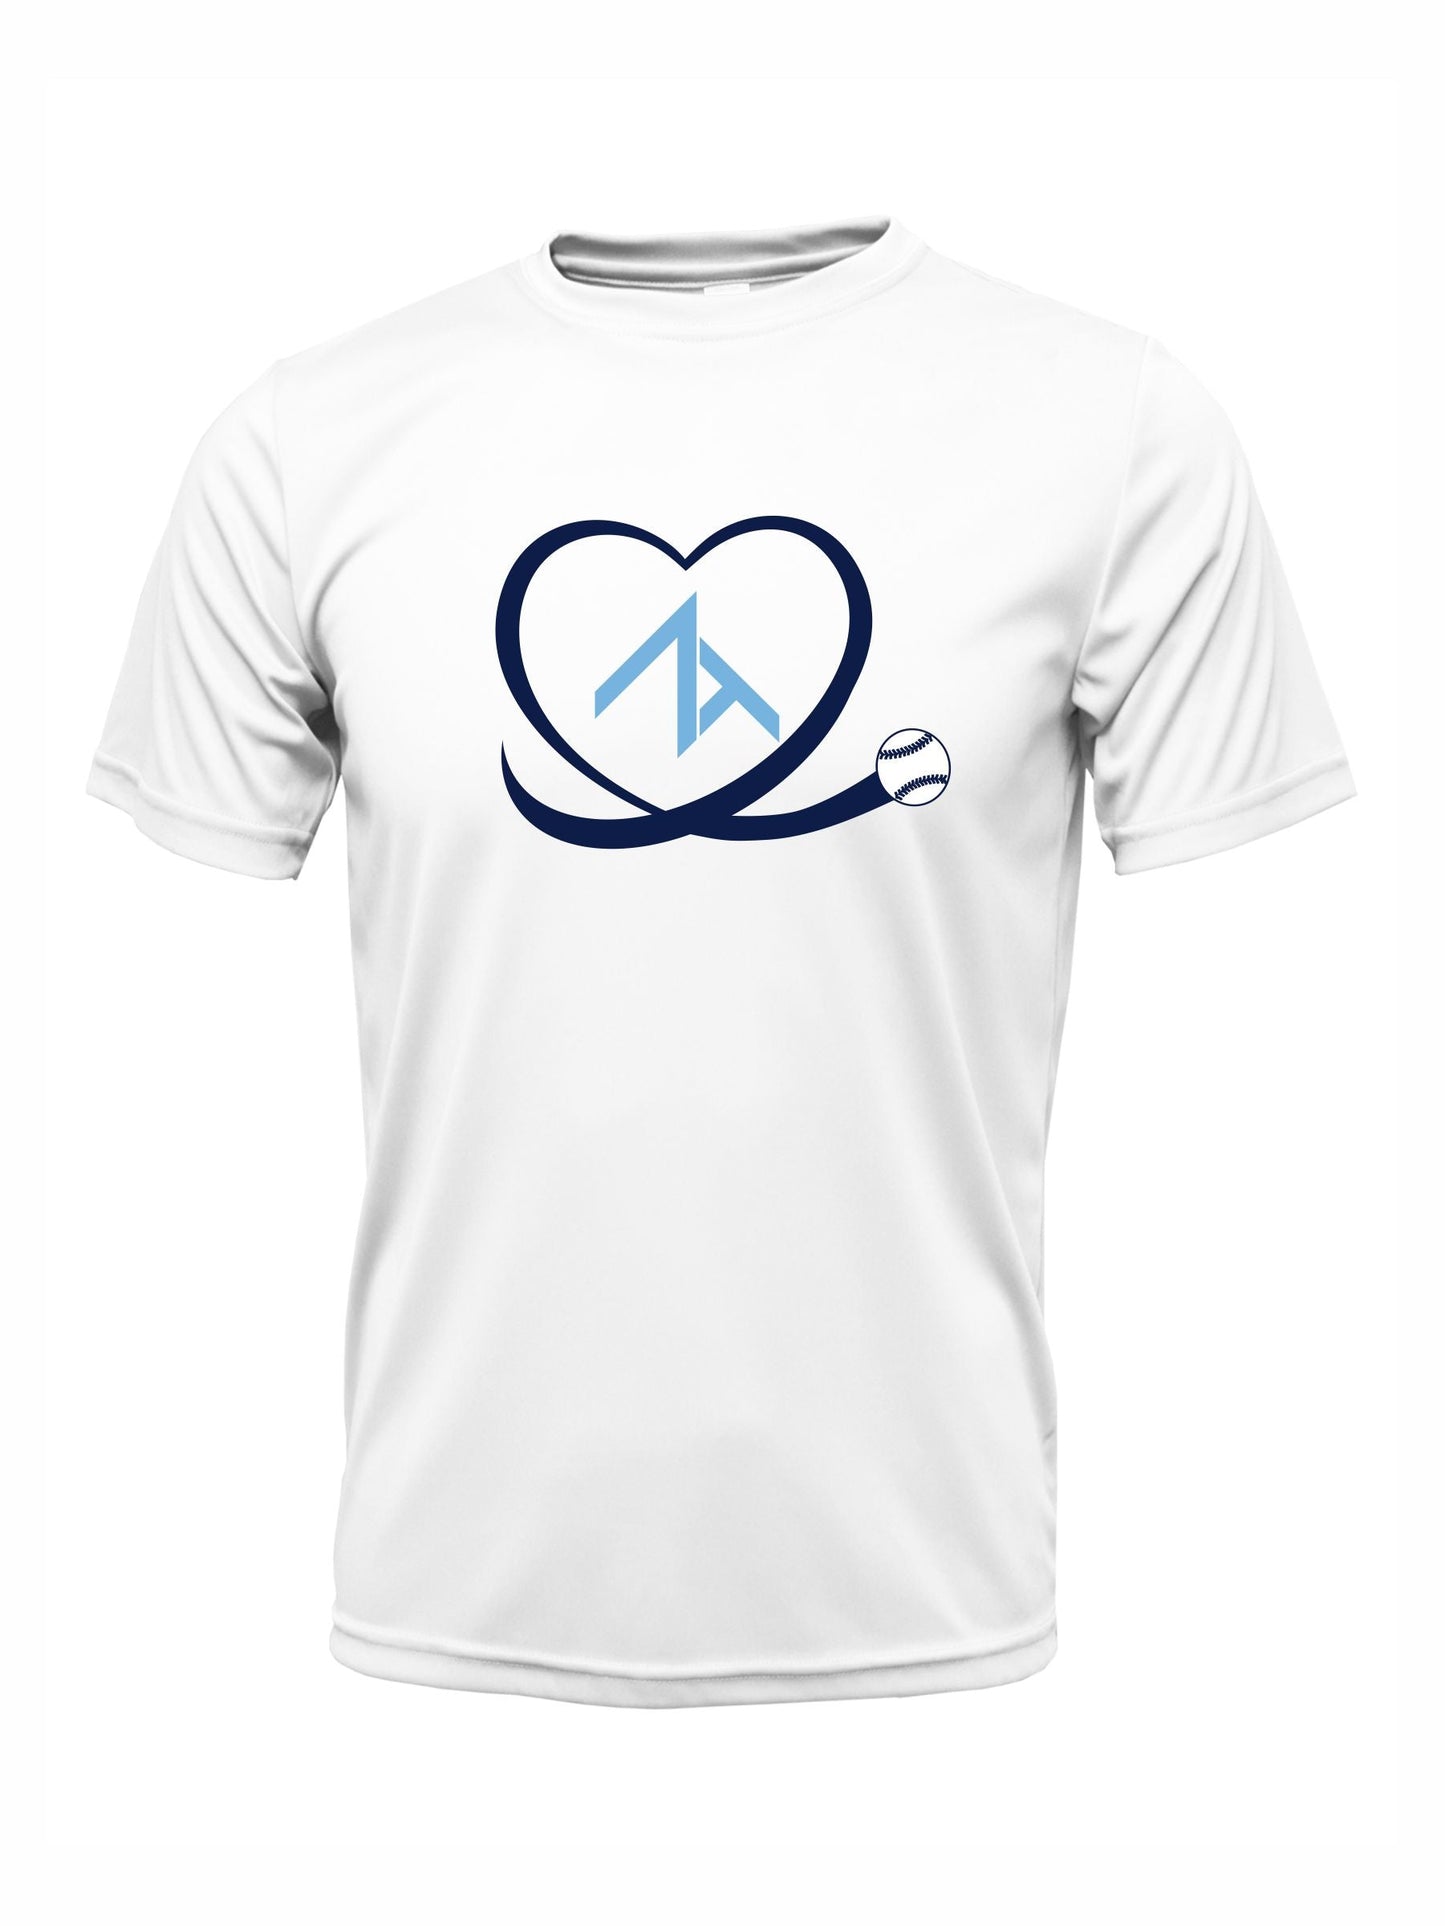 Short Sleeve "HEART" Cotton T-shirt